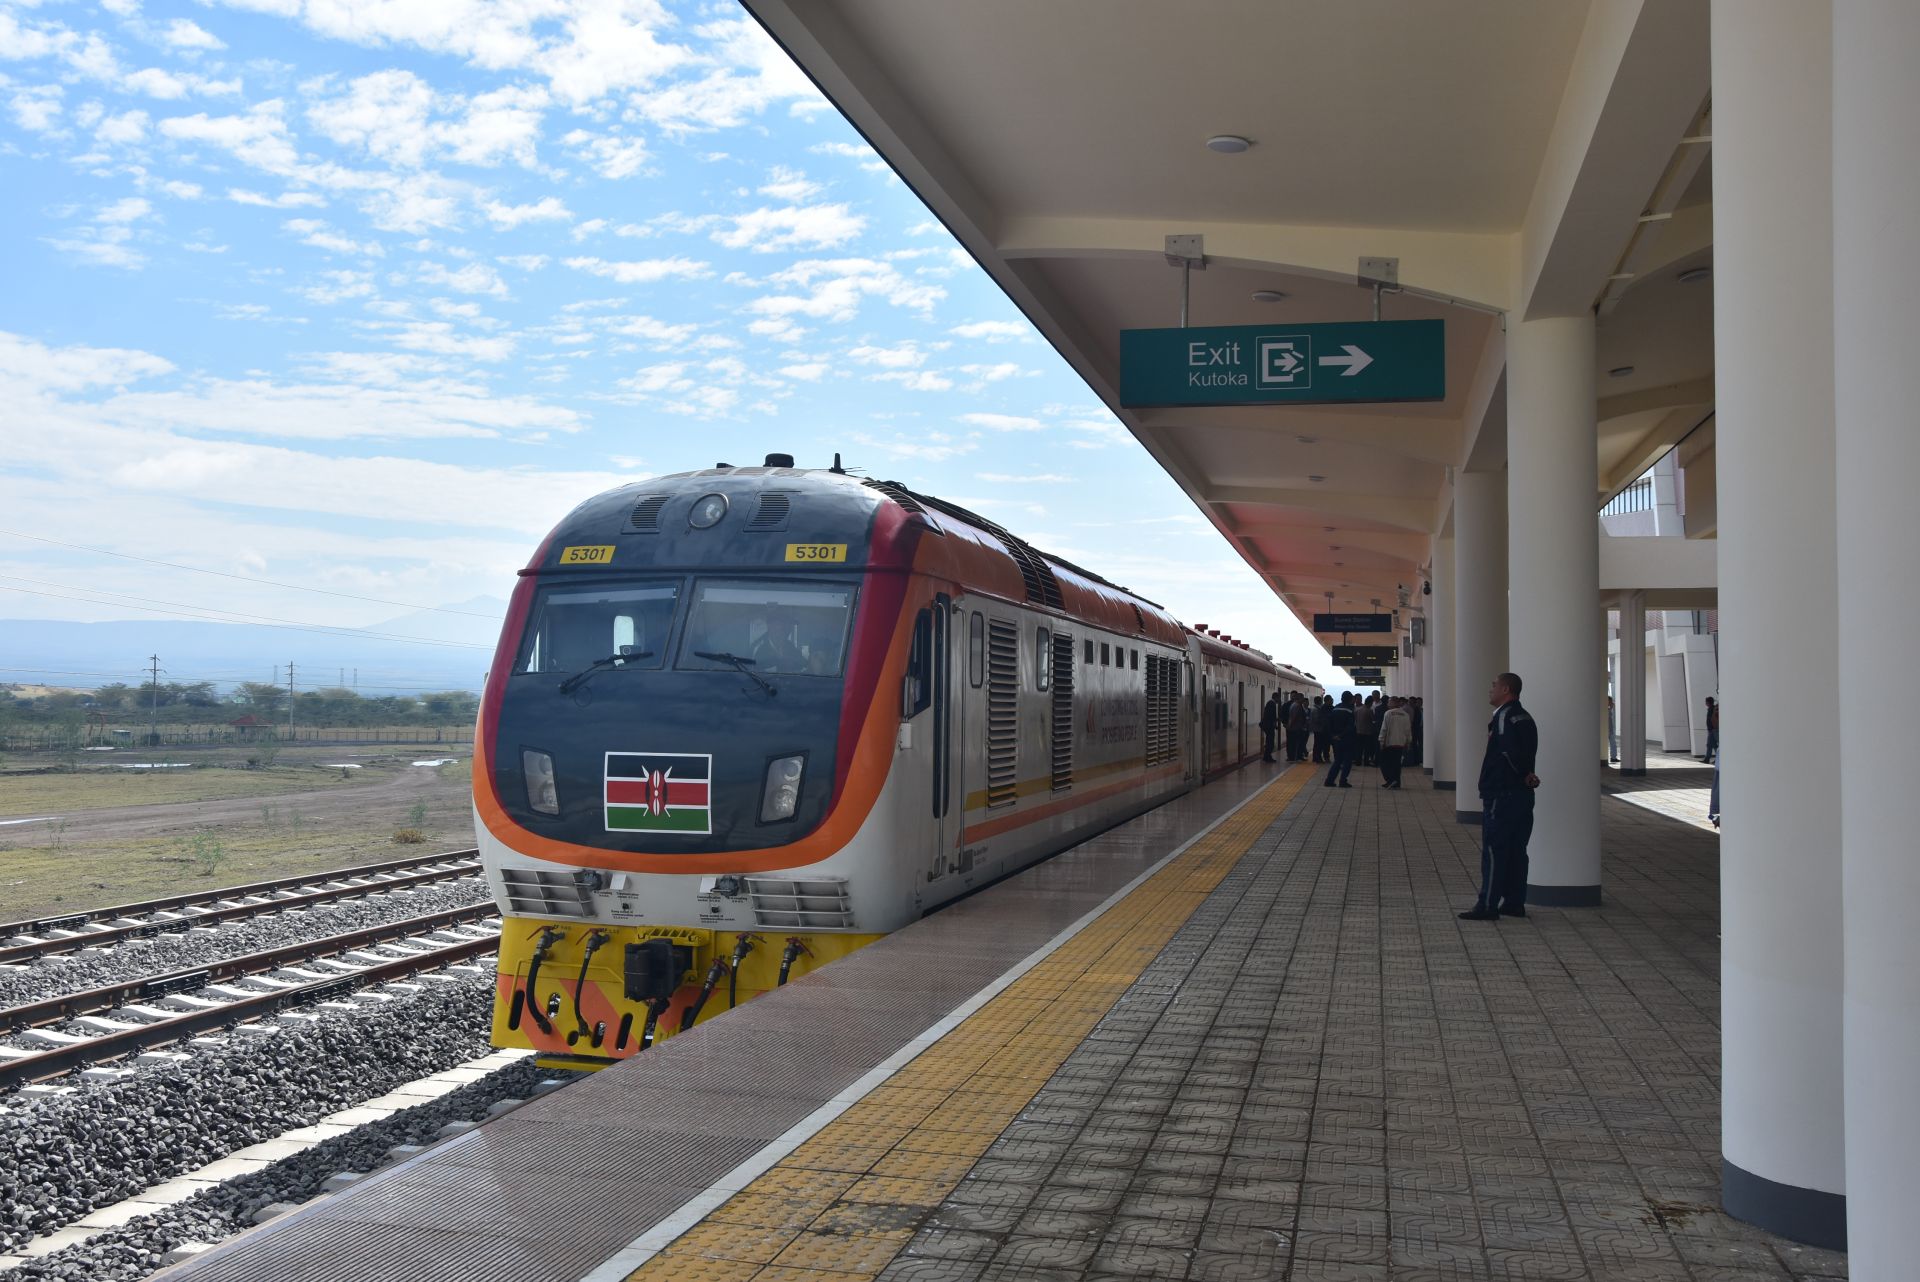 新建内马铁路位于非洲东部,是蒙内铁路向肯尼亚西北部的延伸